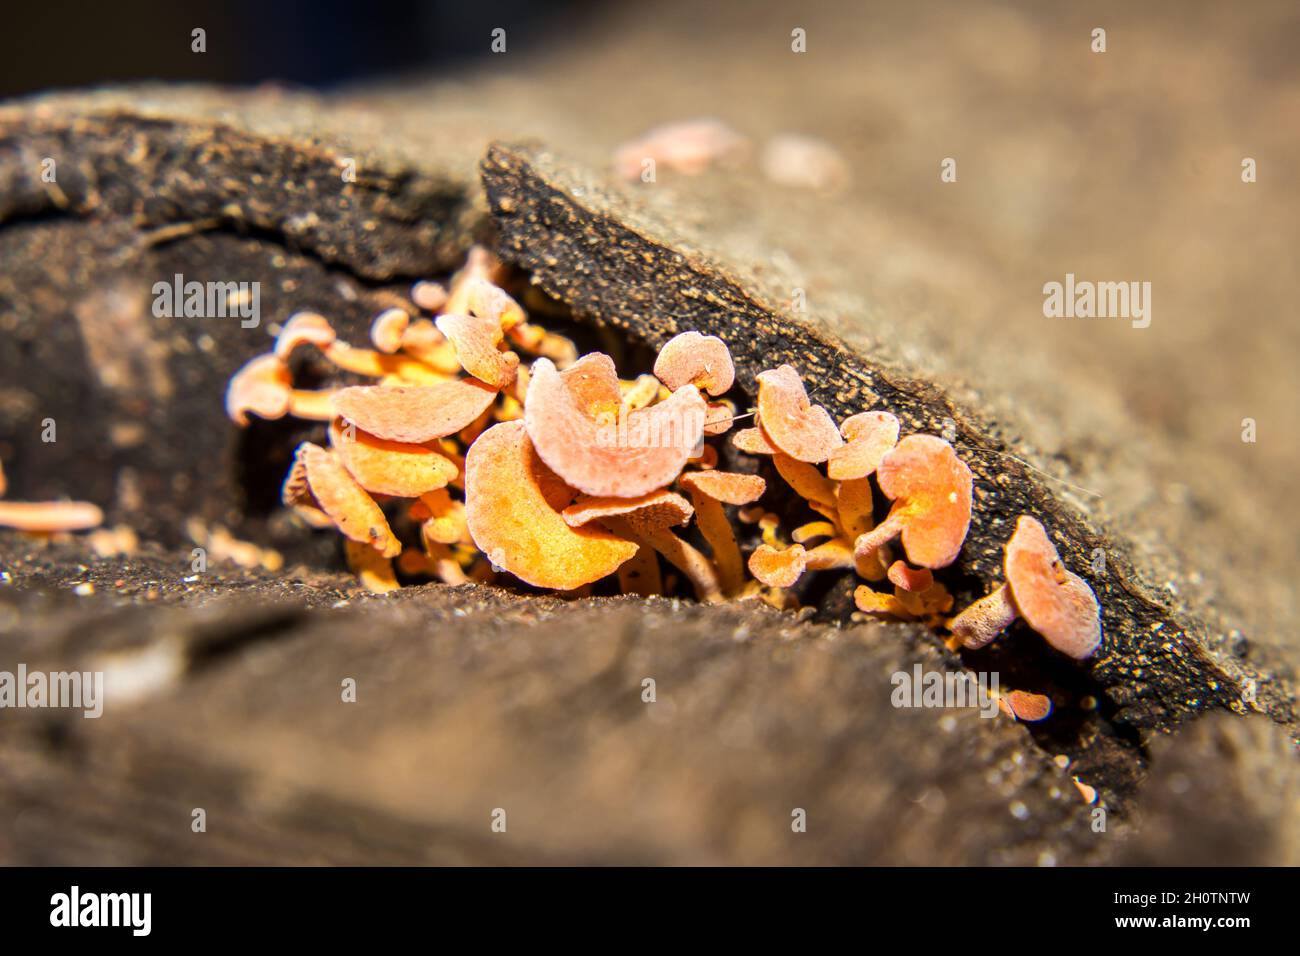 Un groupe de champignons en nid d'abeille de couleur orange qui sortent d'une fente dans une vieille bûche abîmé Banque D'Images